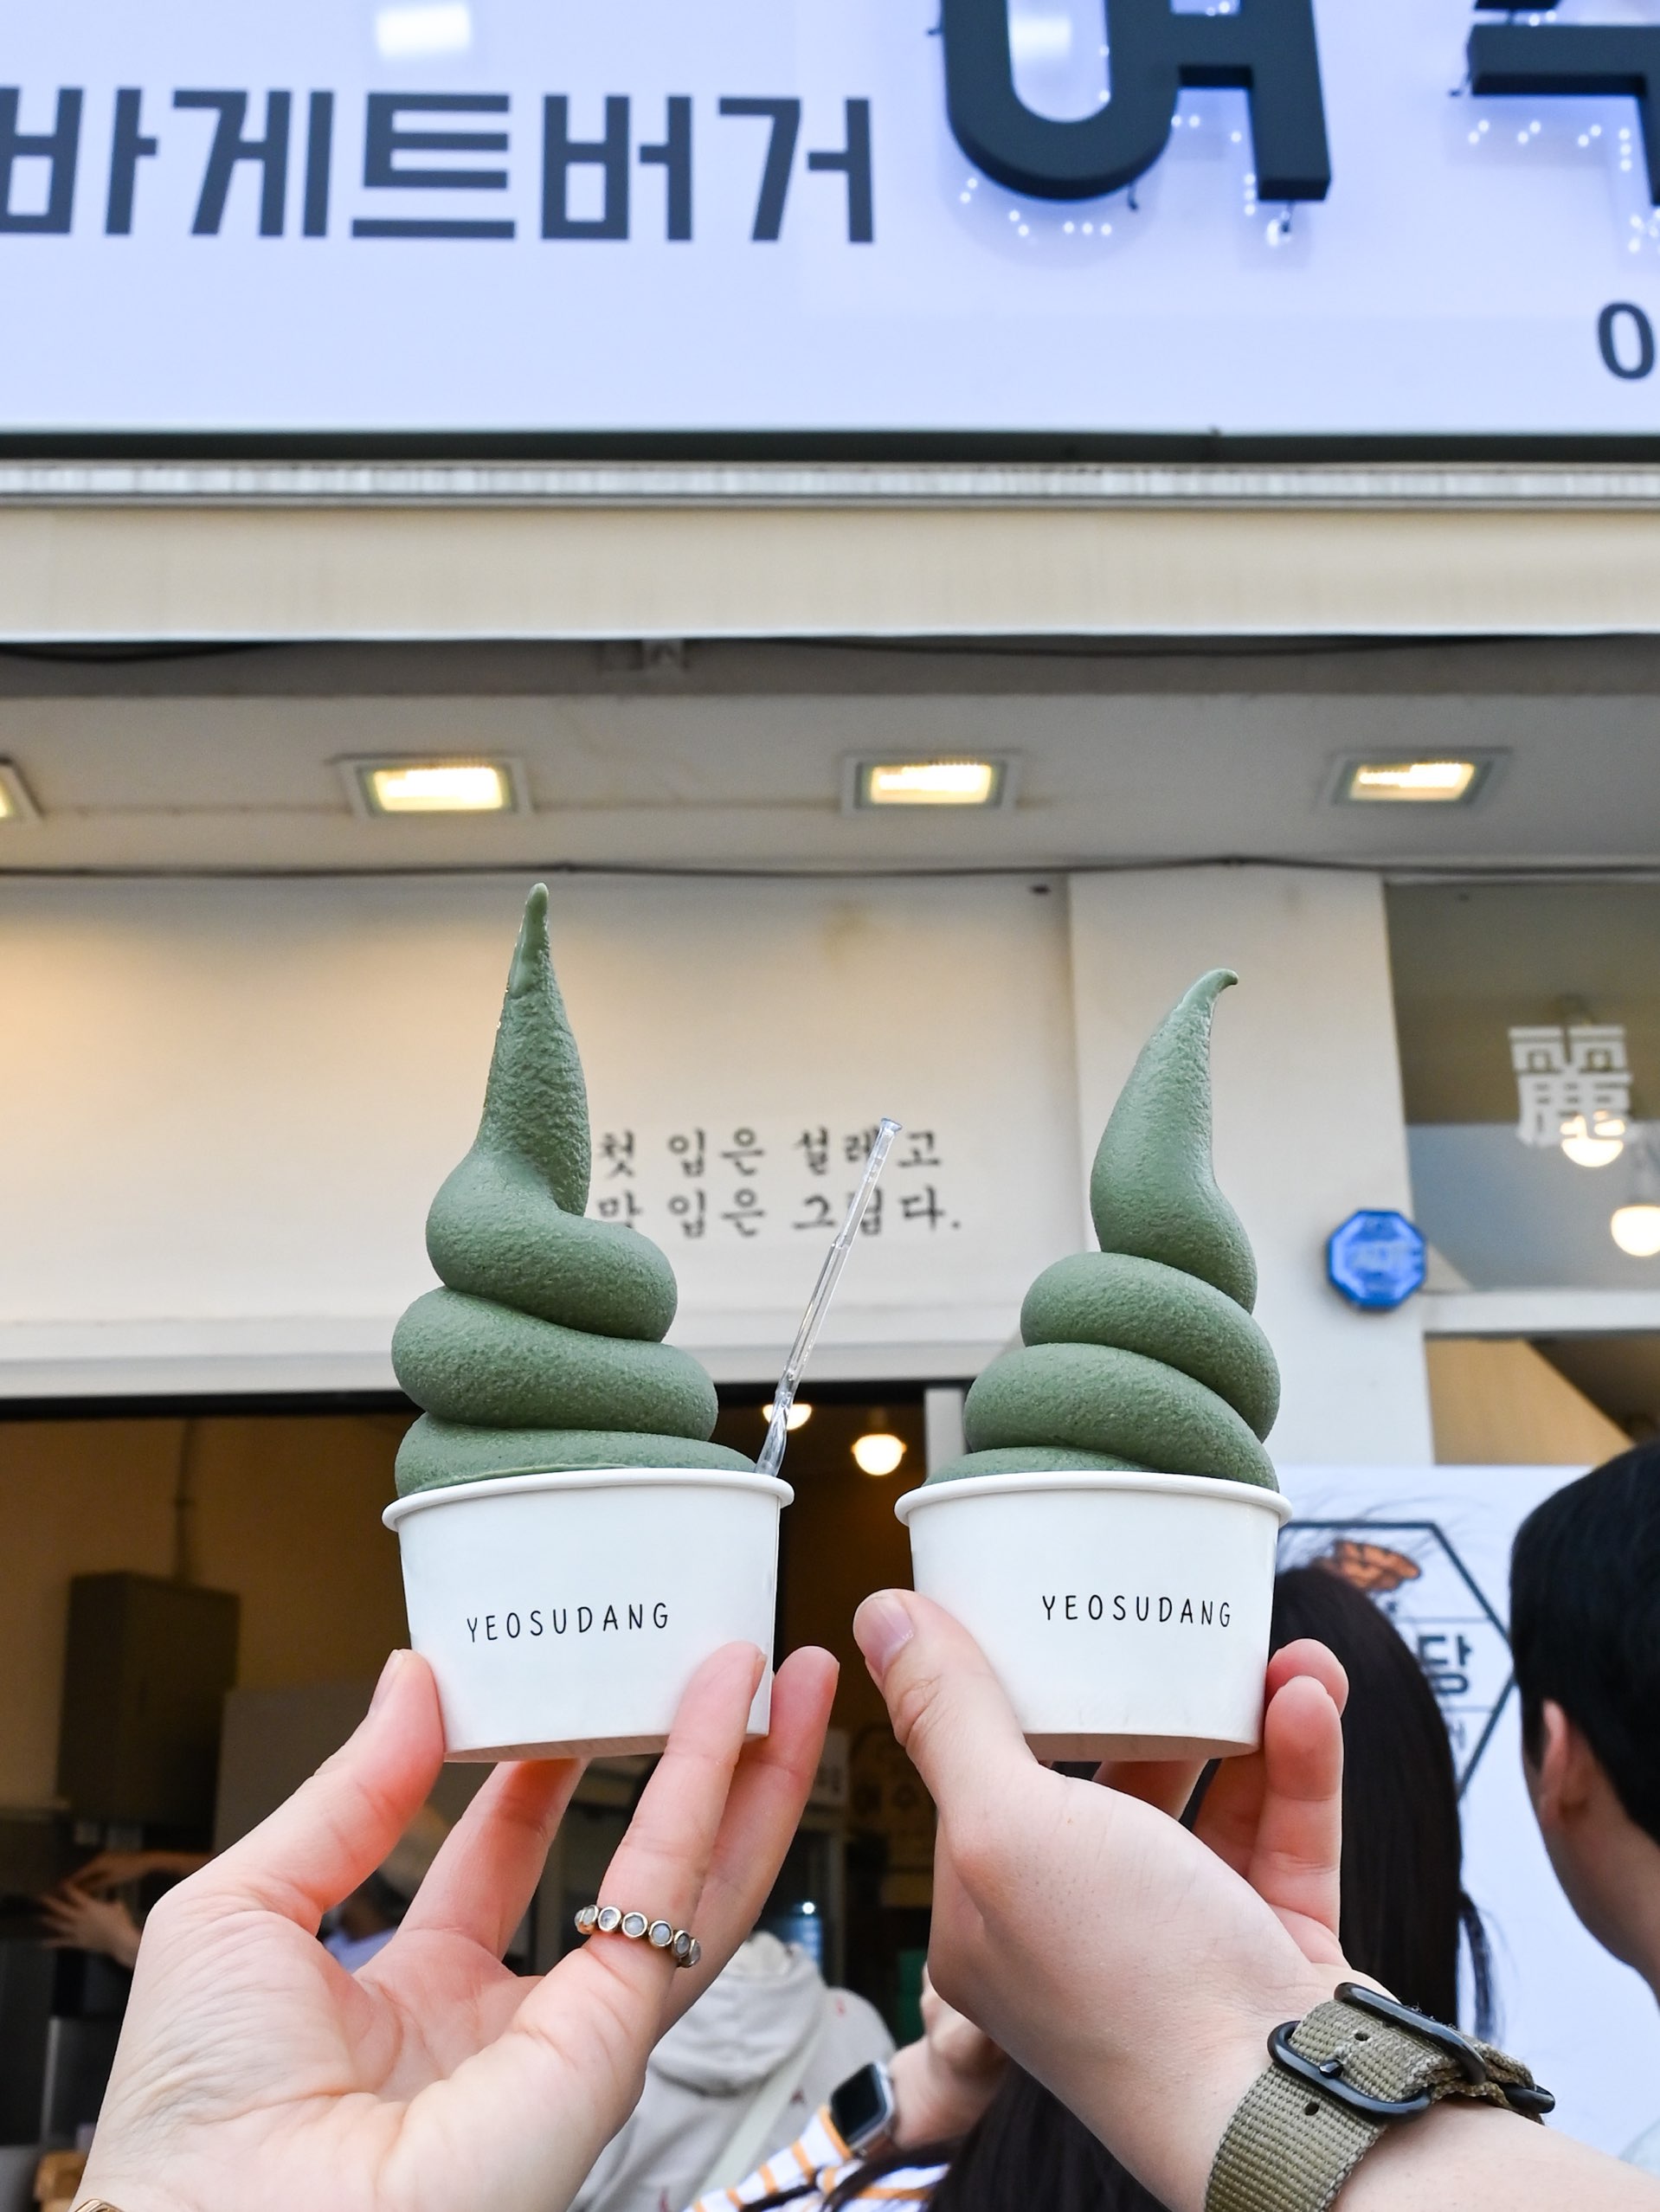 [韩国/丽水]丽水特产,绿色◯◯软冰淇淋!